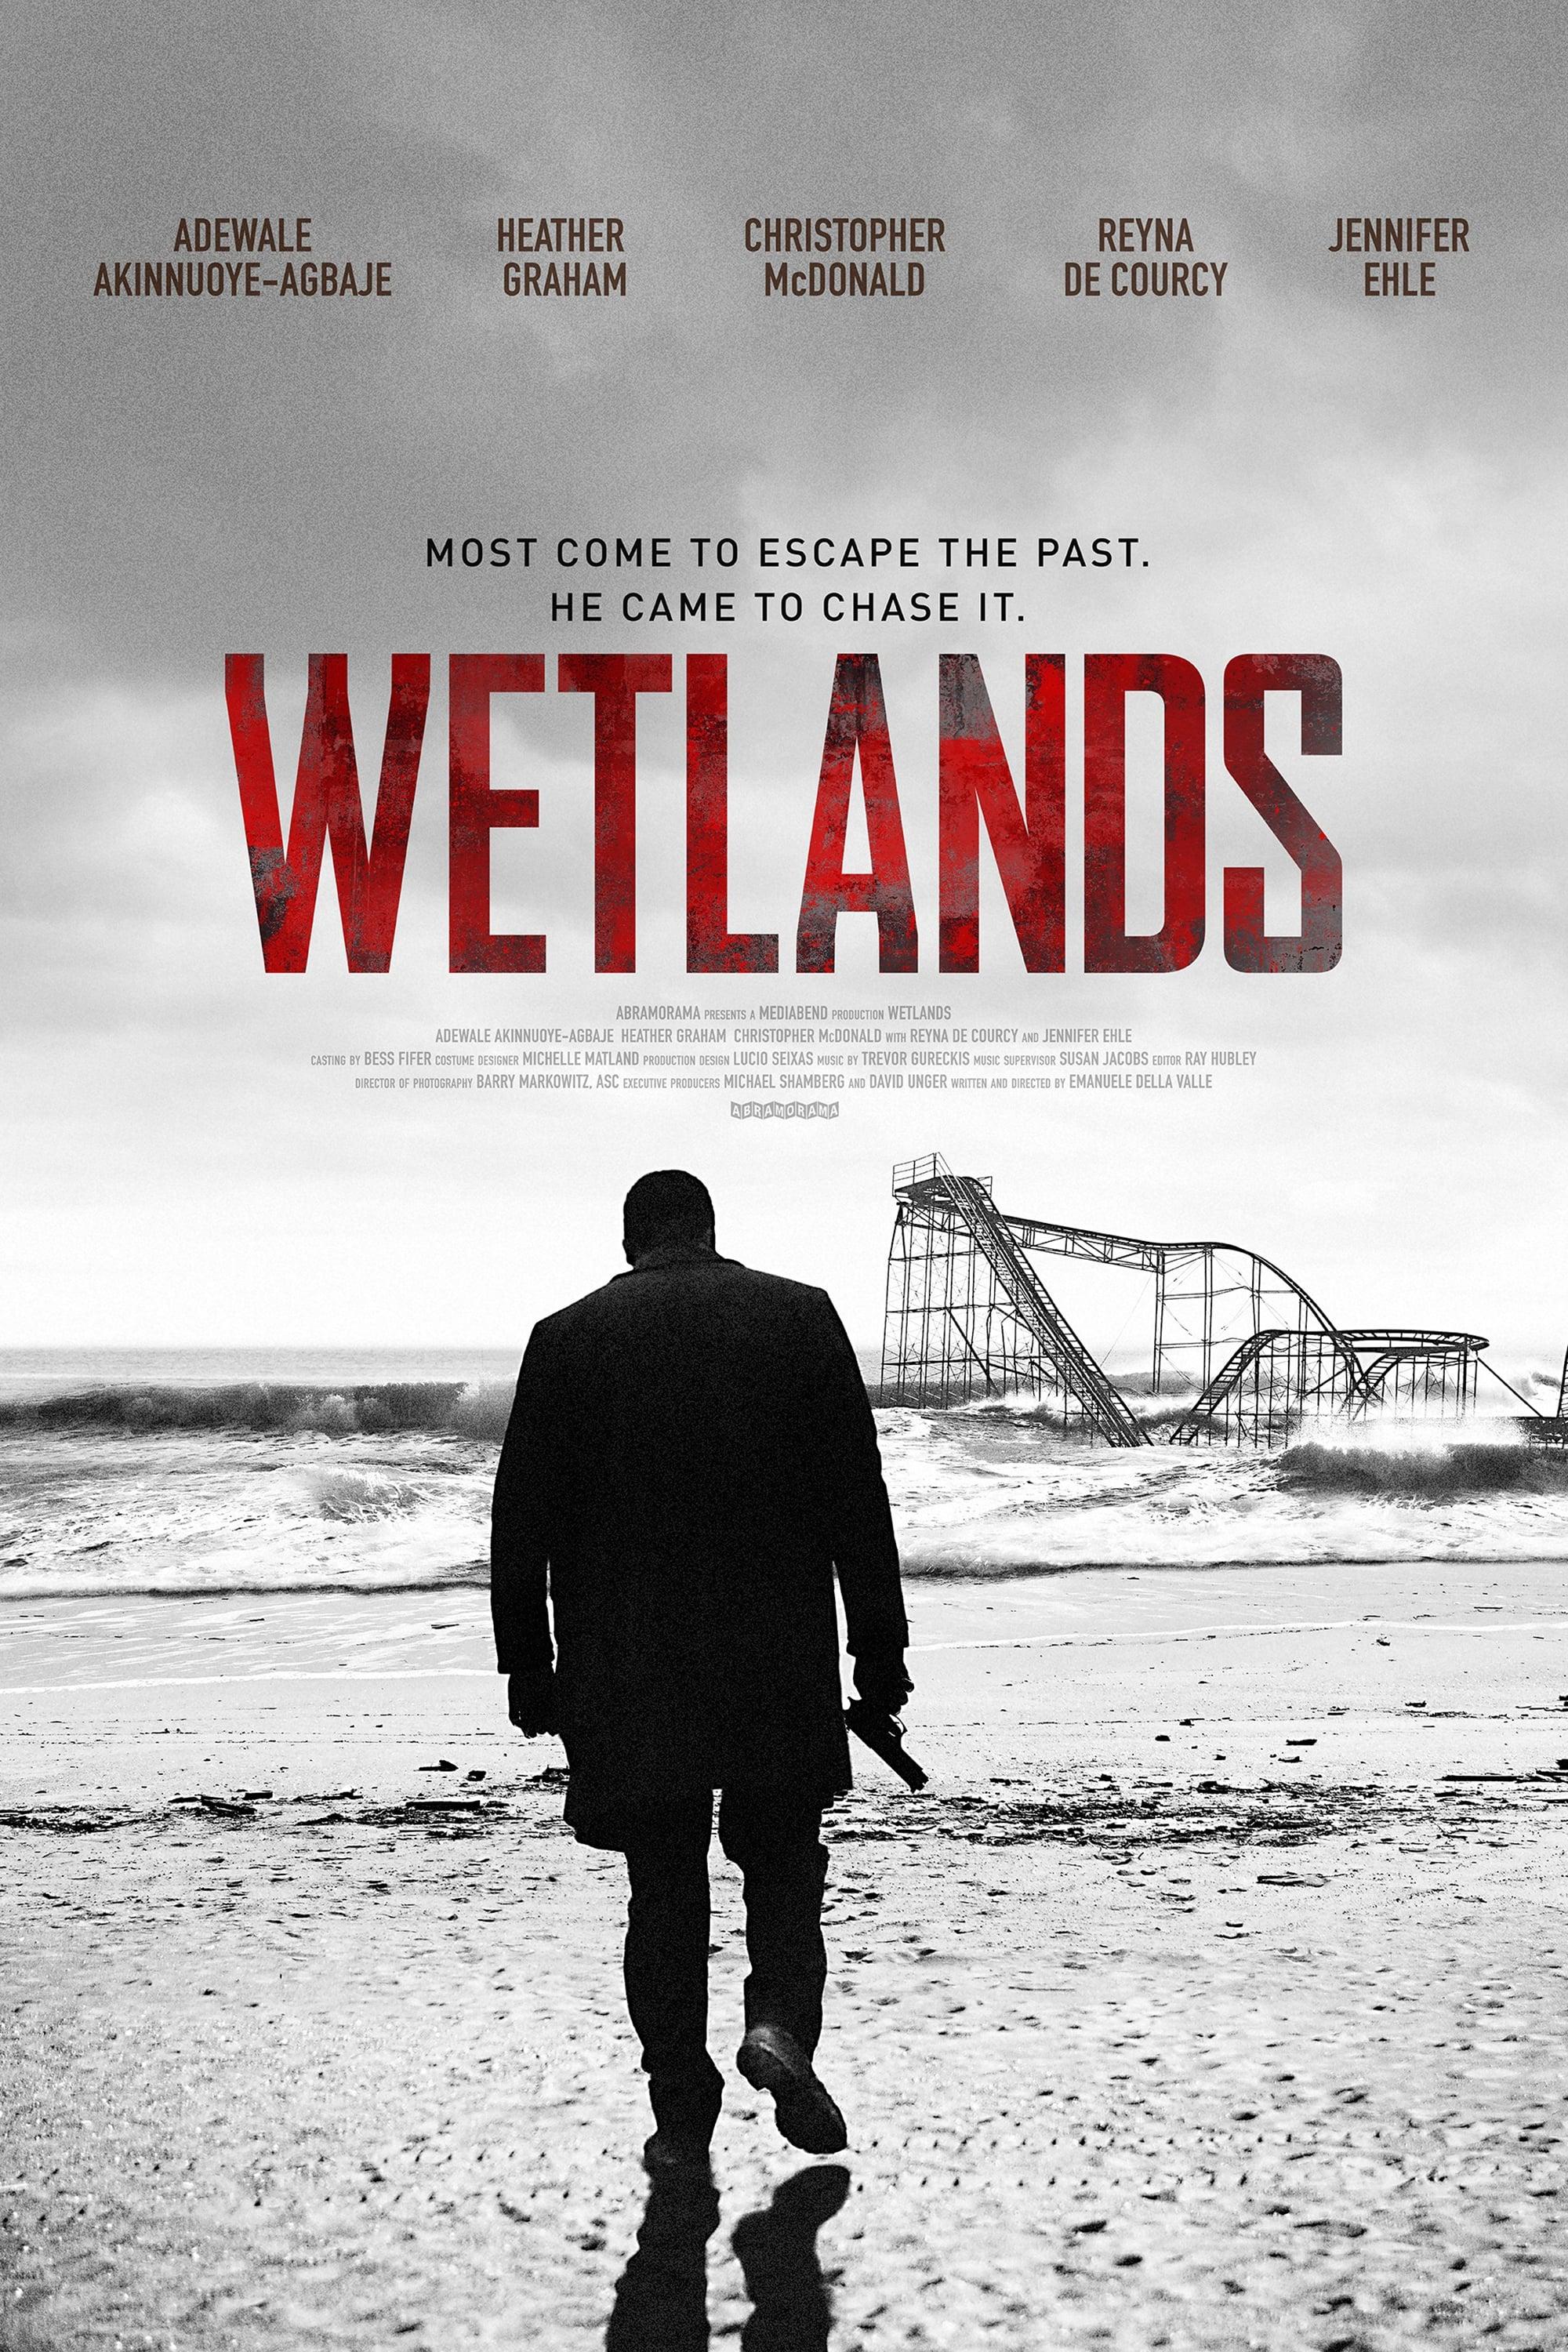 Wetlands poster